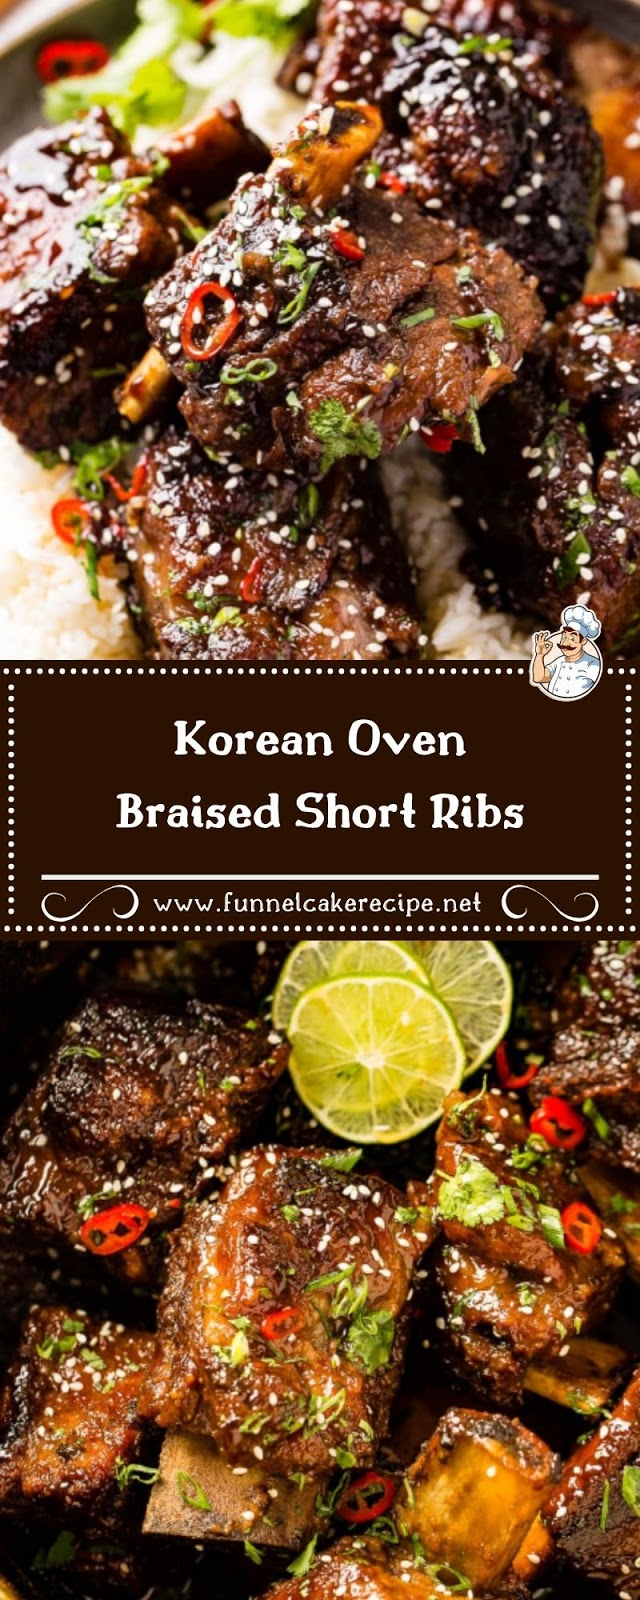 Korean Oven Braised Short Ribs